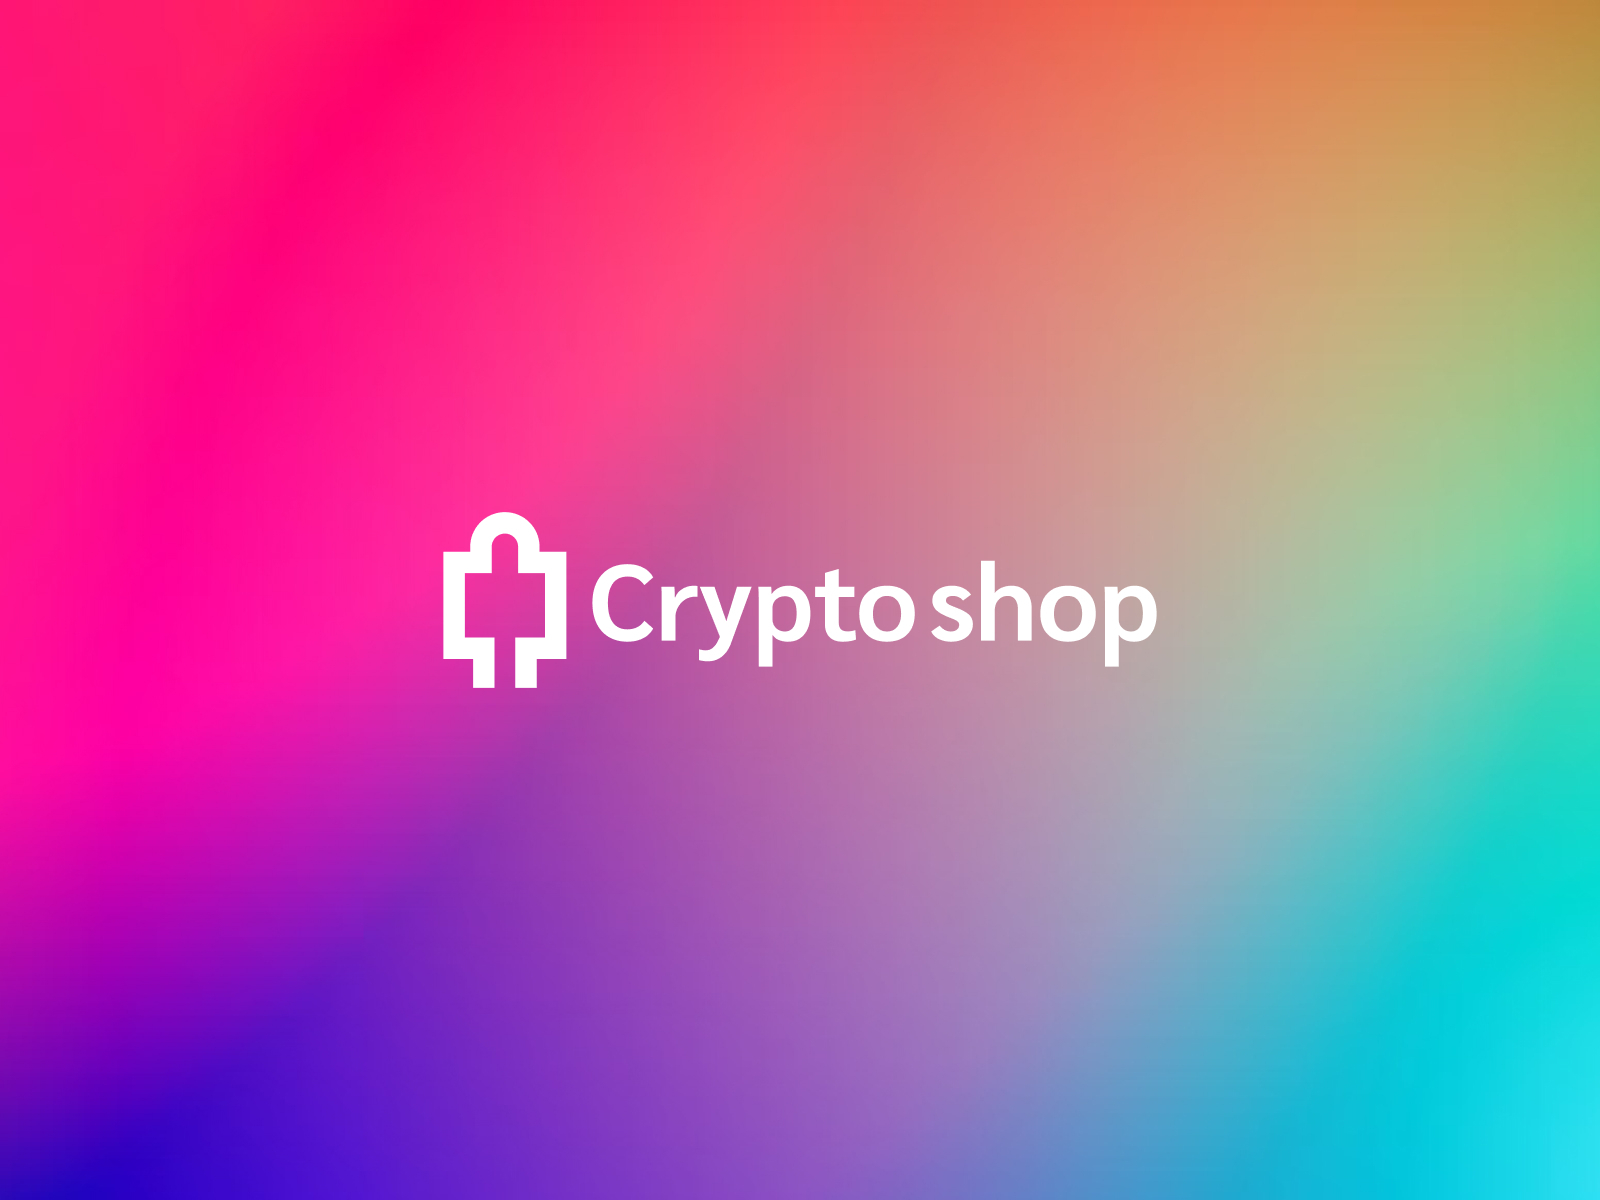 the crypto shop